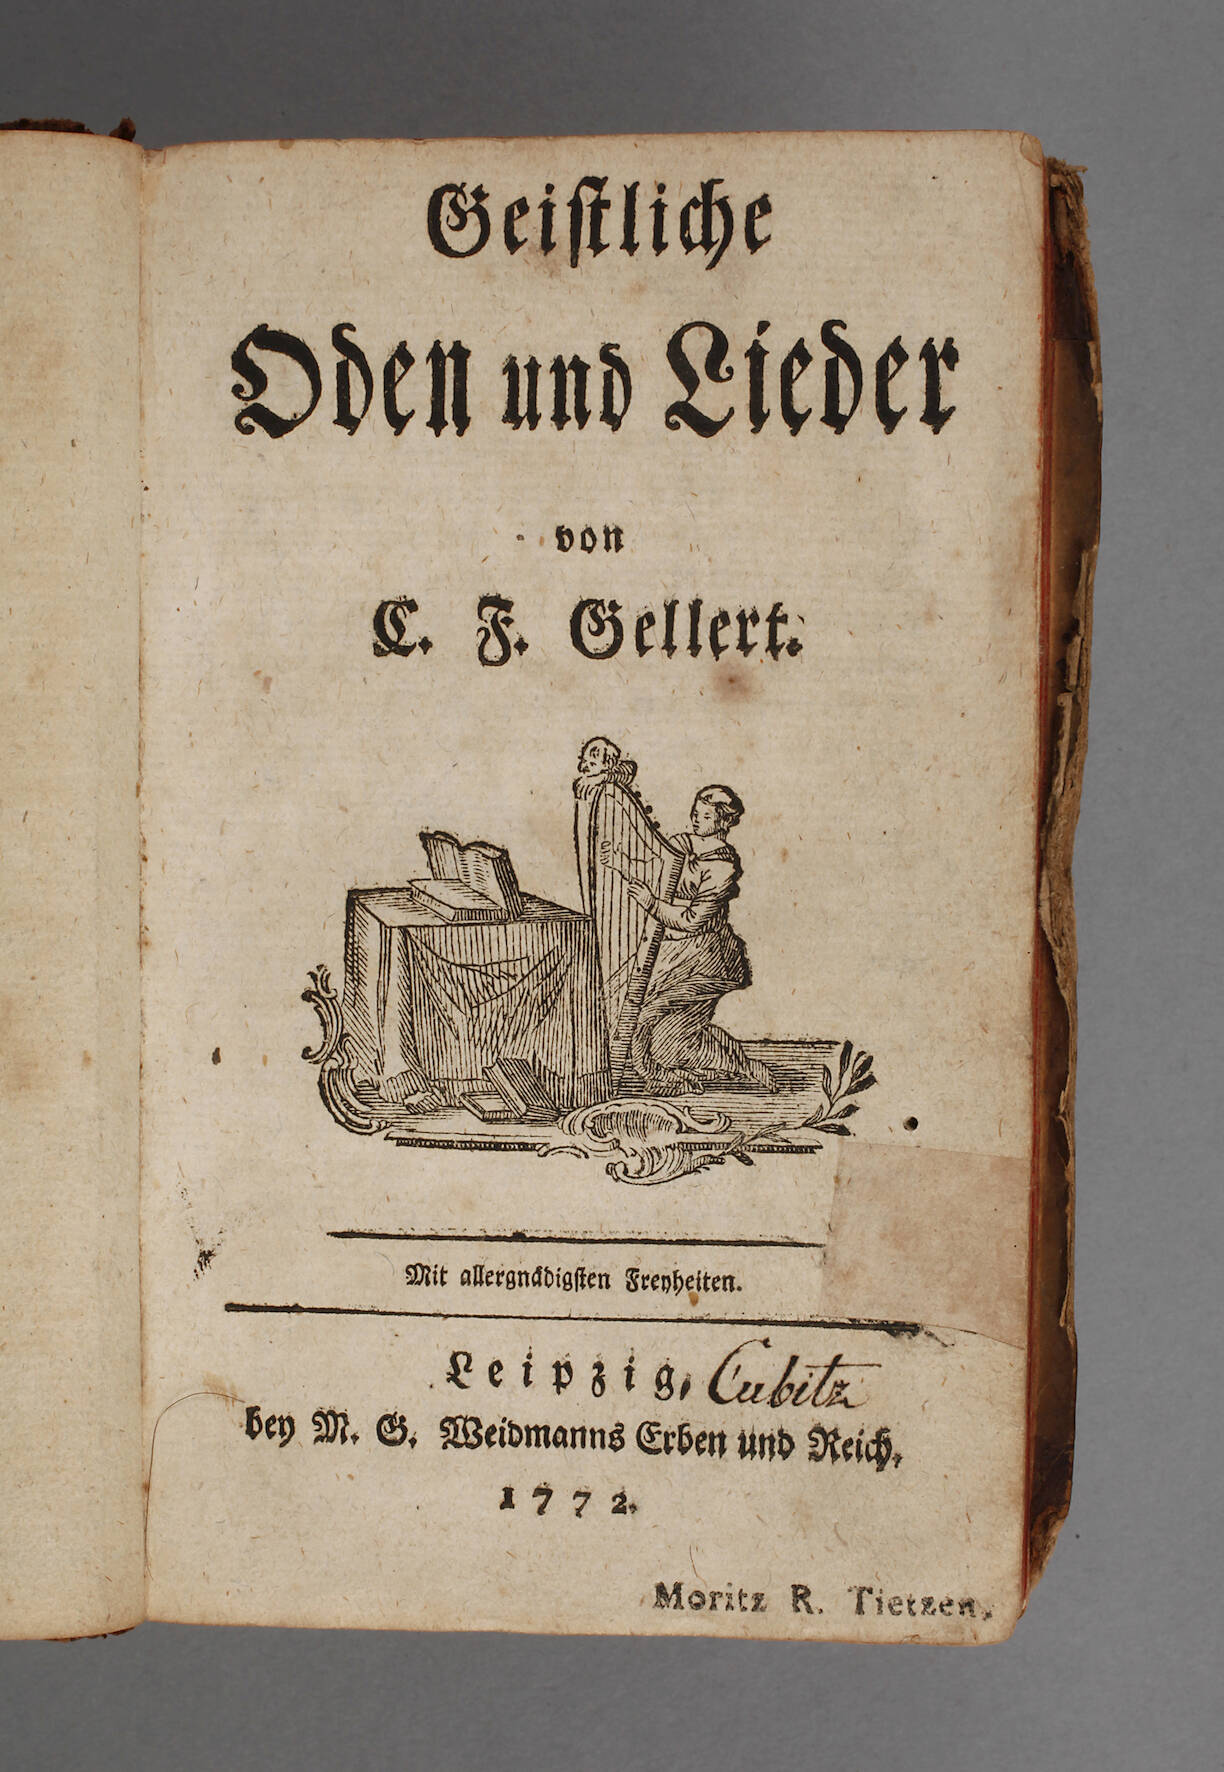 Geistliche Oden und Lieder von C. F. Gellert